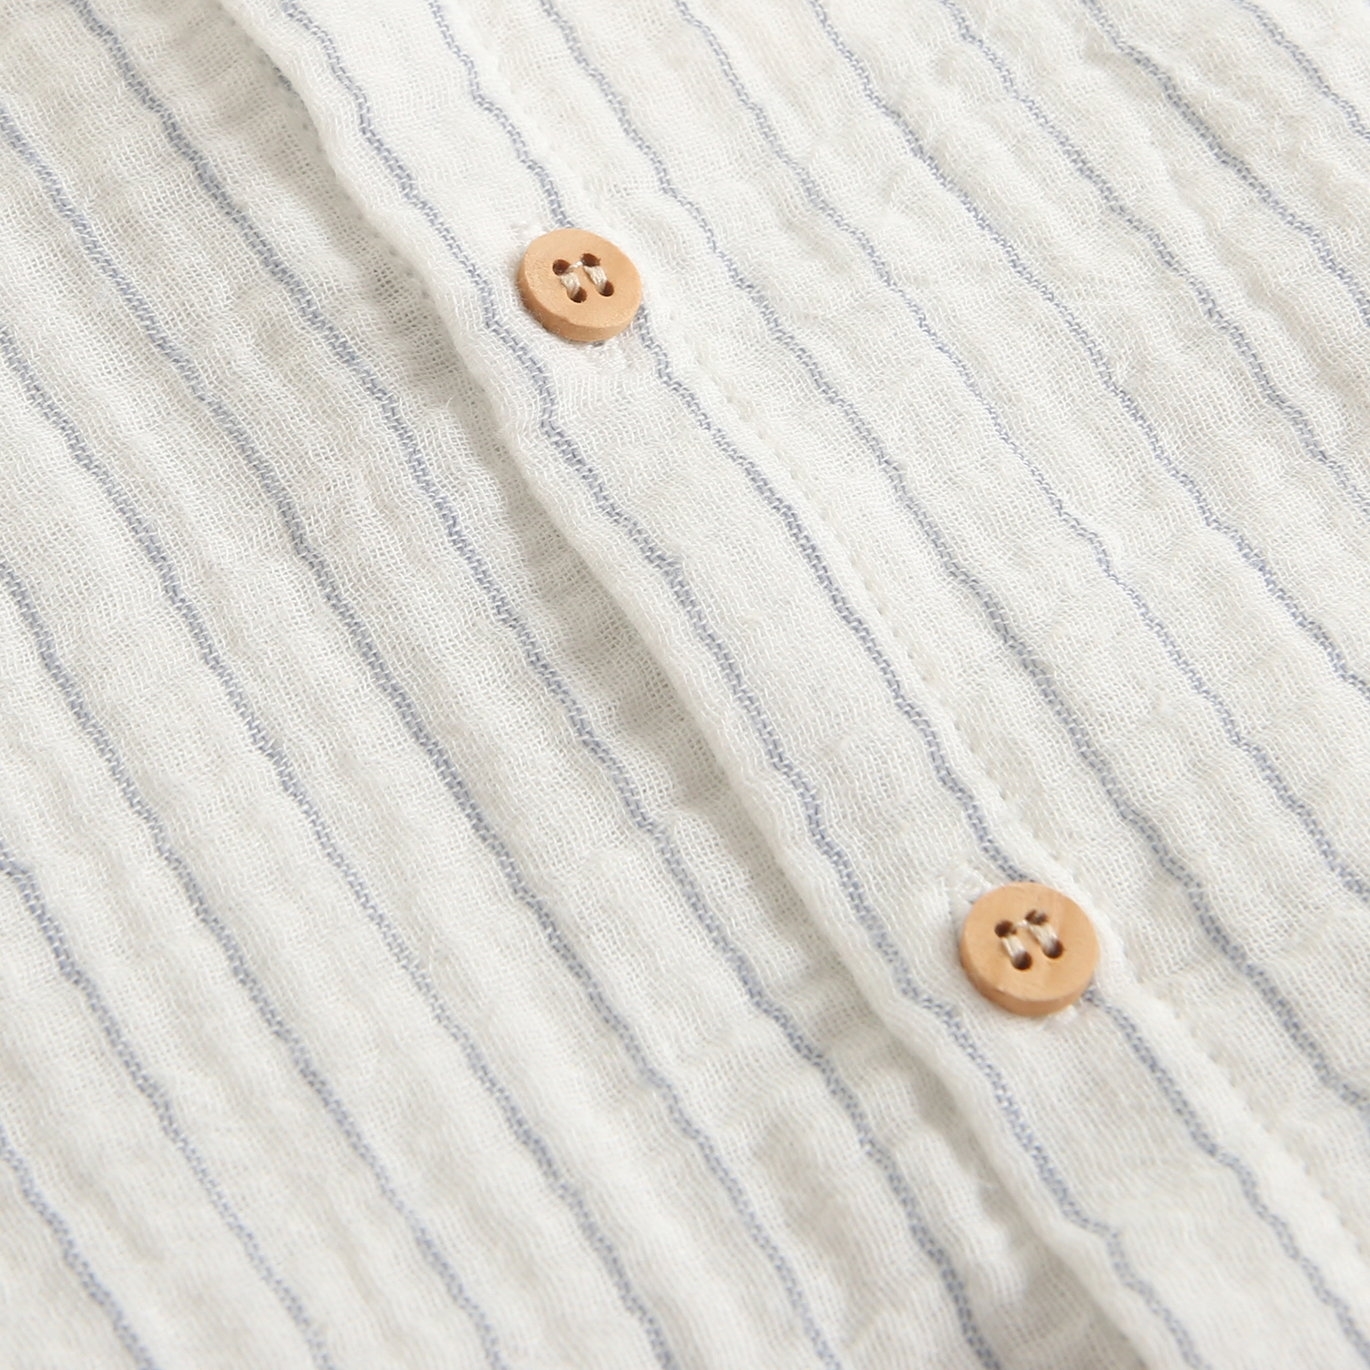 Imagen de Camisa de bebé niño de muselina blanca con rayas azules